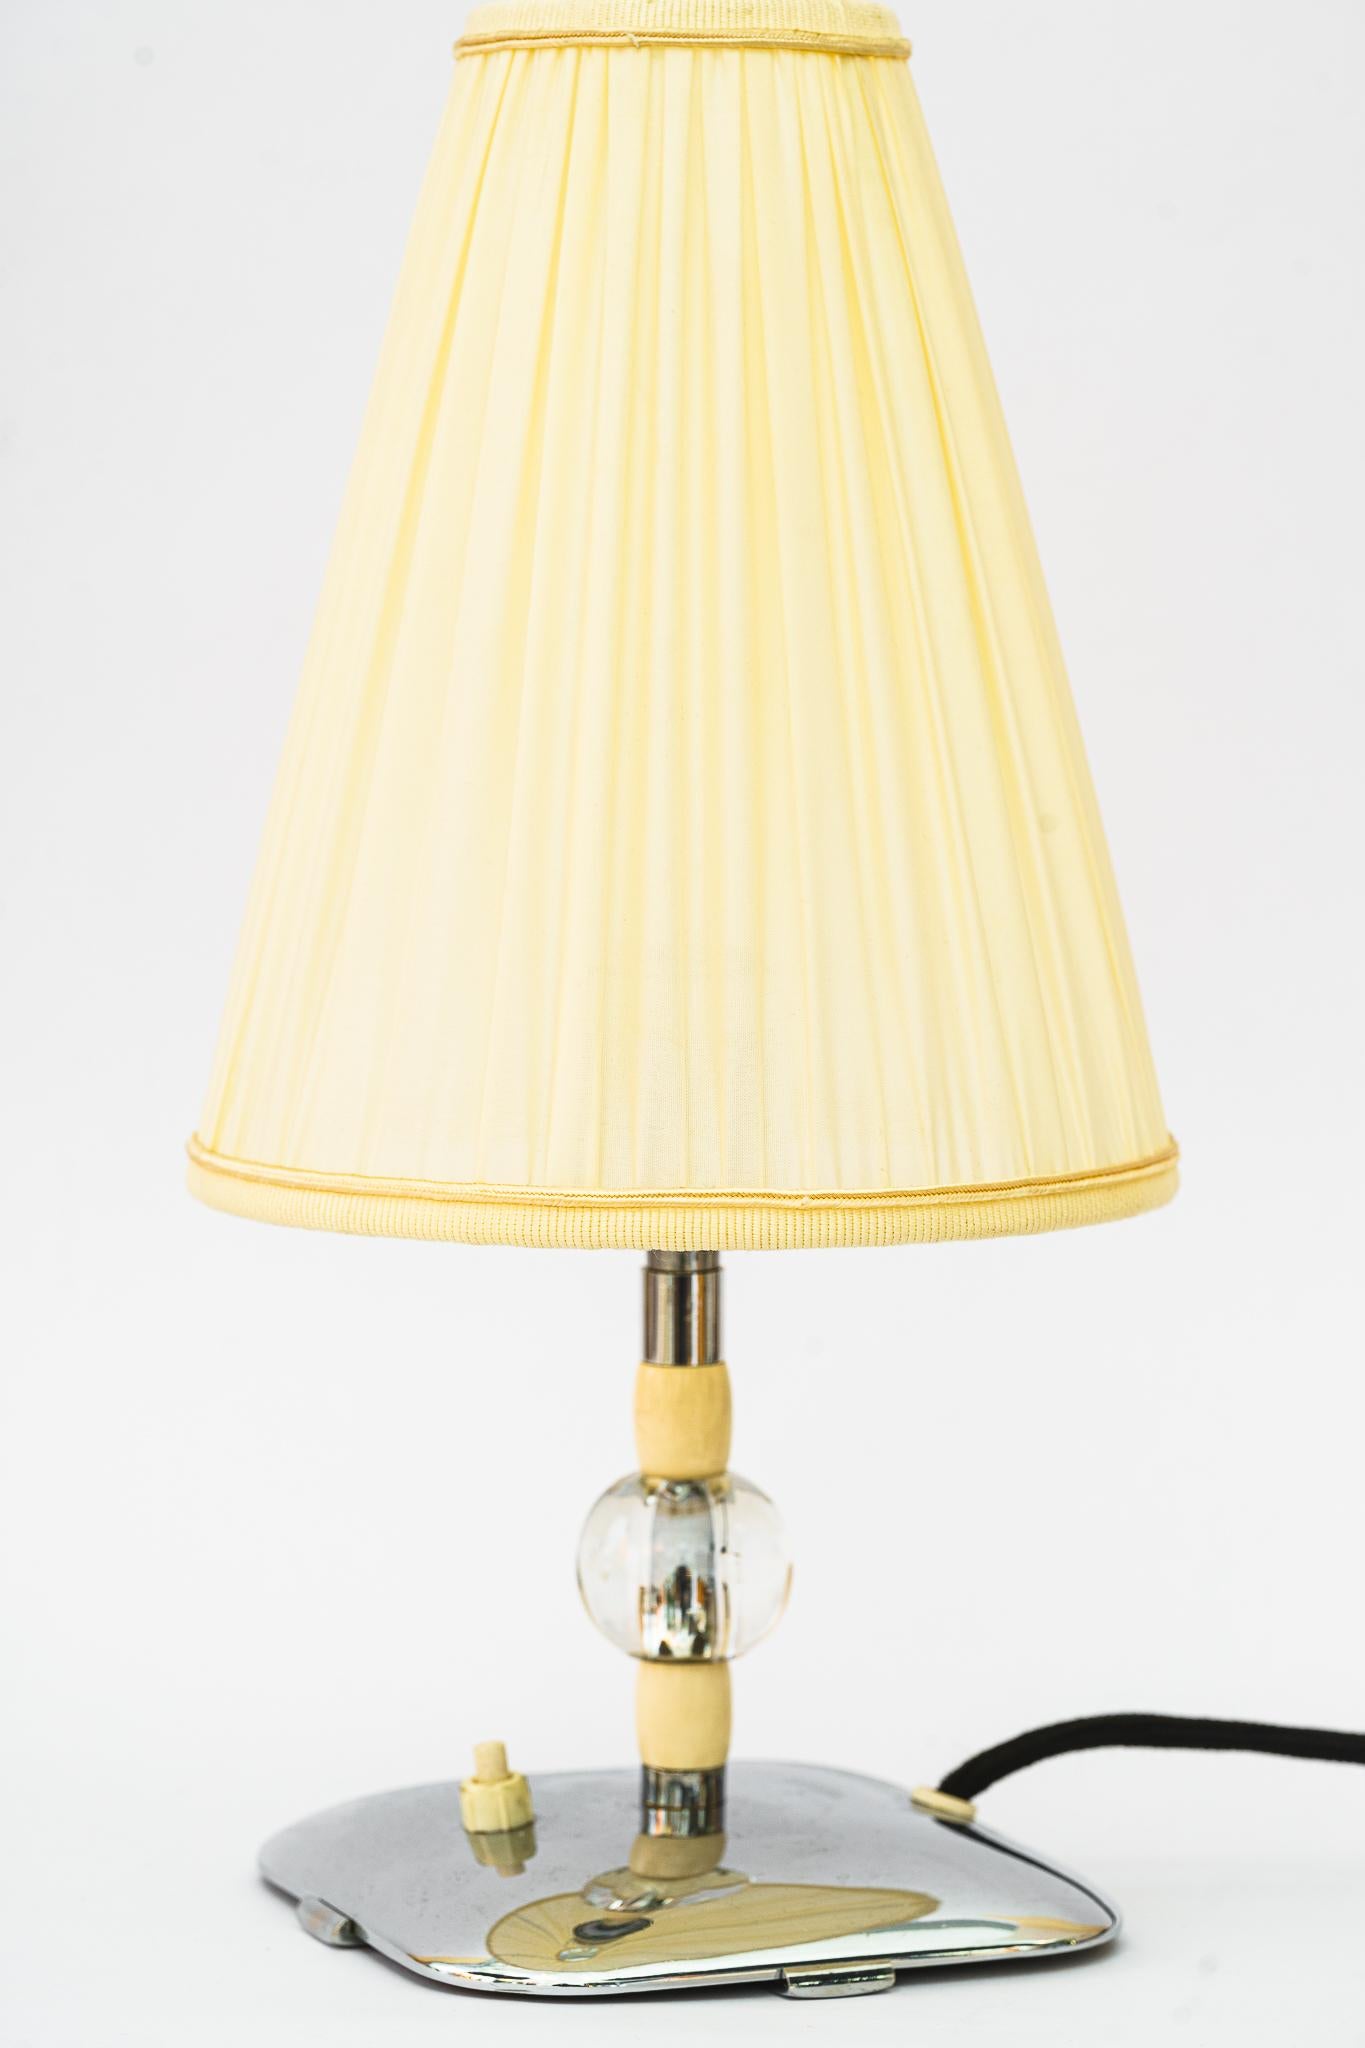 Lampe de table Art Déco vienne vers 1920
Etat original
Seul l'abat-jour est remplacé